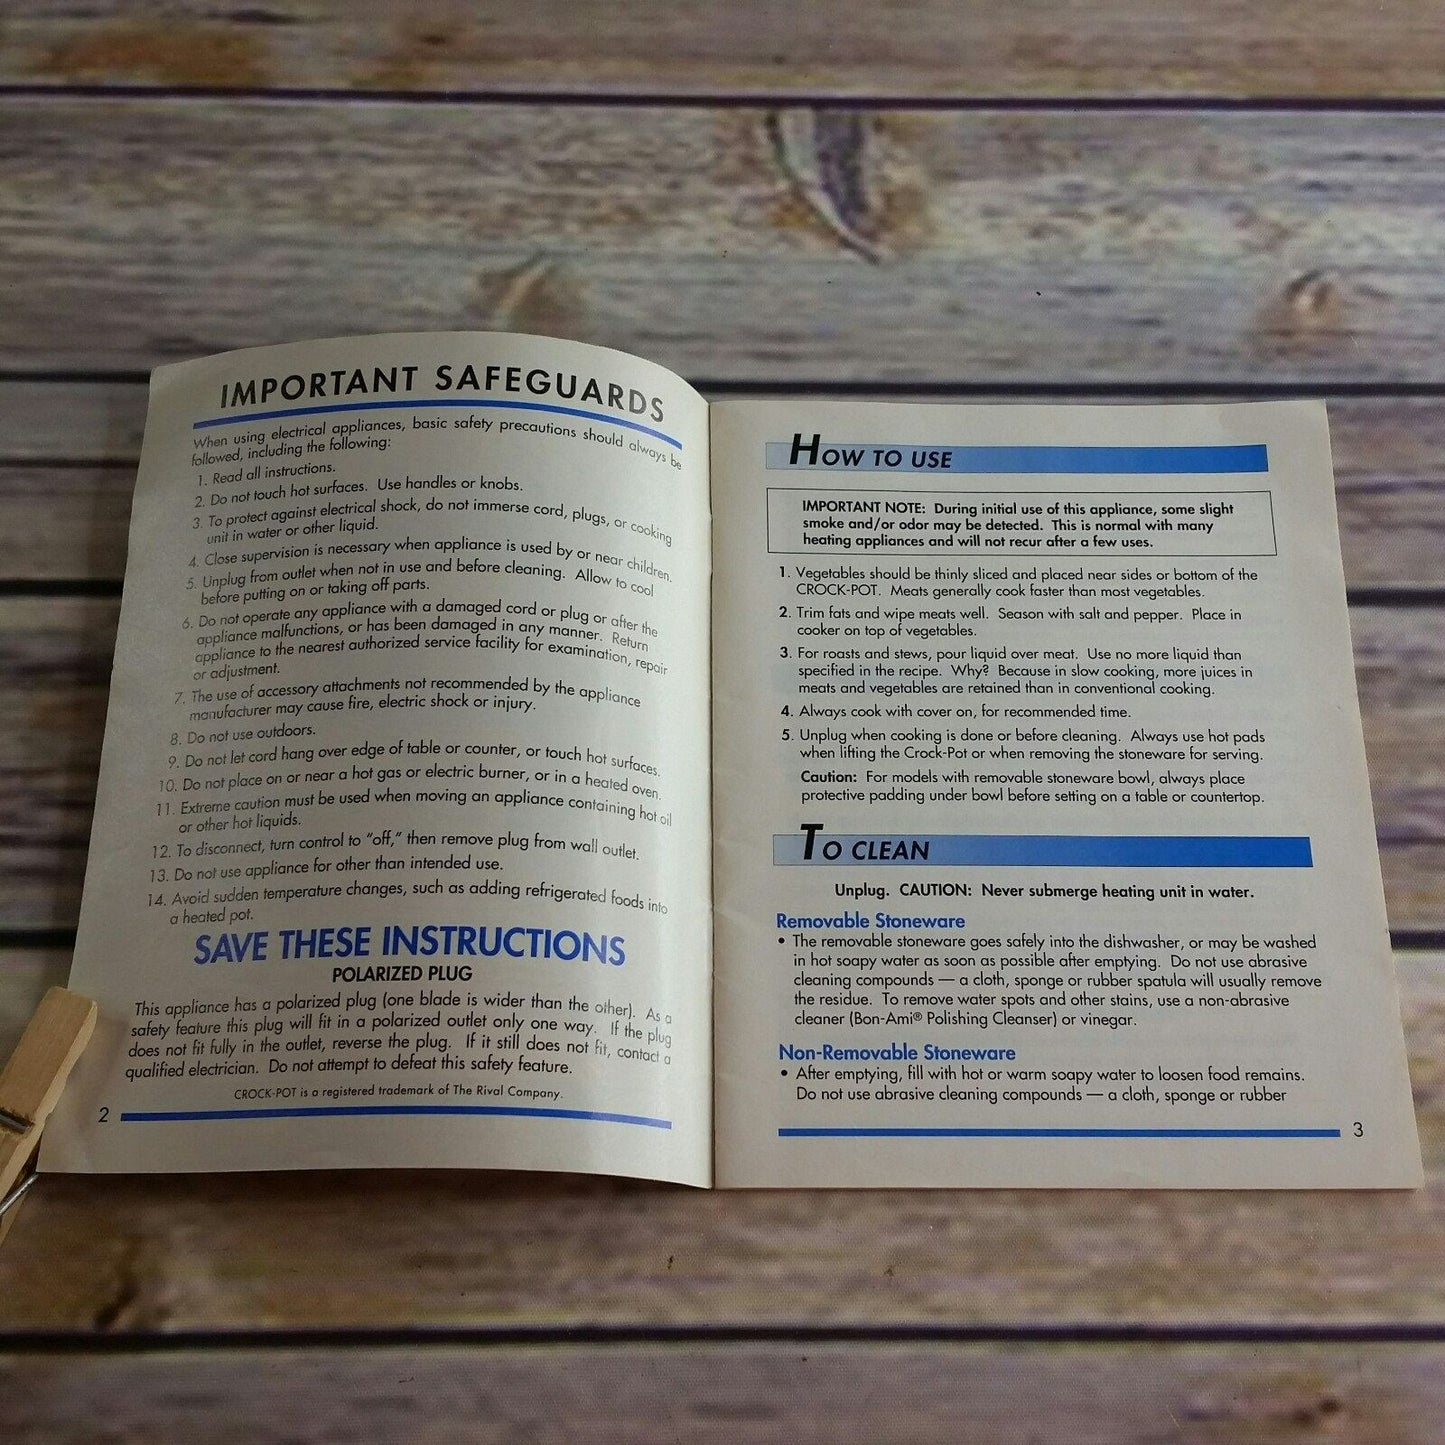 Vintage Rival Crock Pot Cookbook Owner's Manual Recipes Slow Cooker Blue Booklet Pamphlet